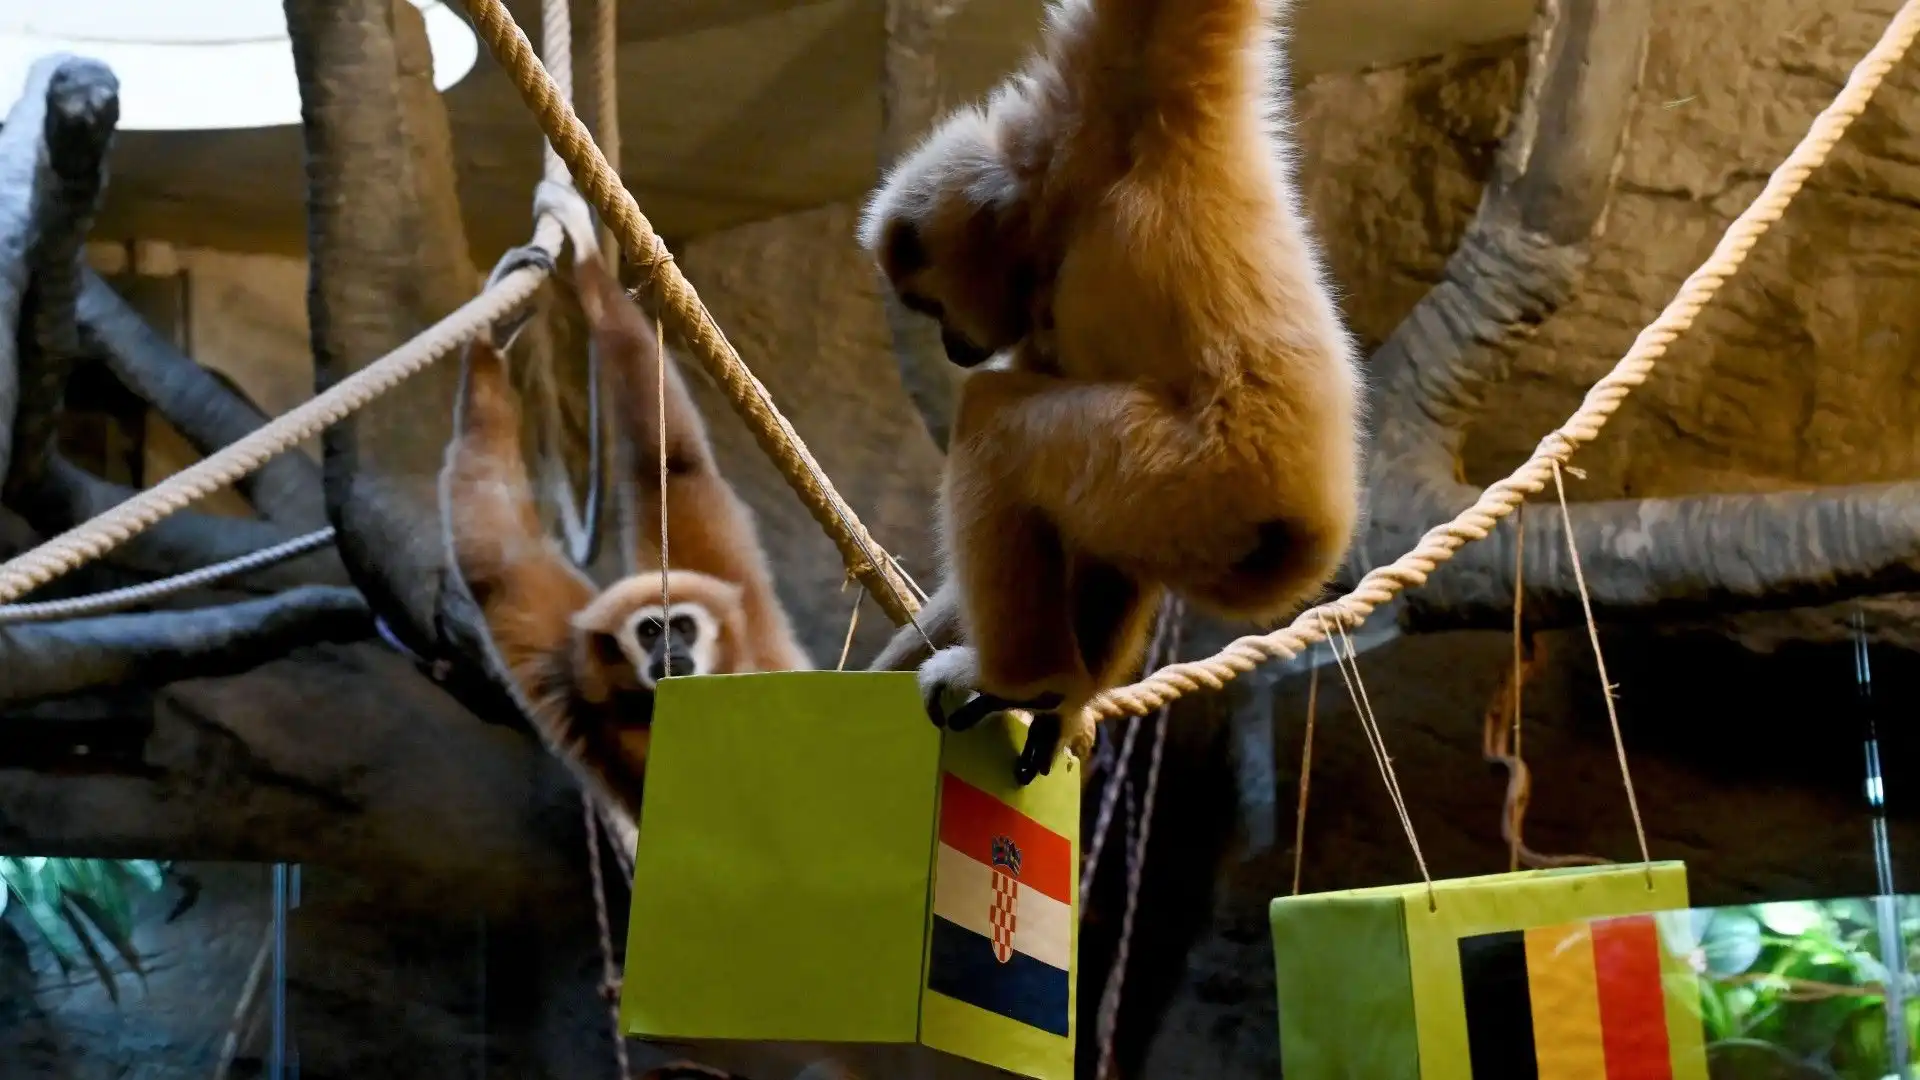 Mondiali: una scimmia prevede chi vincerà tra Croazia e Belgio. Le foto
Lo show si è tenuto allo zoo di Zagabria